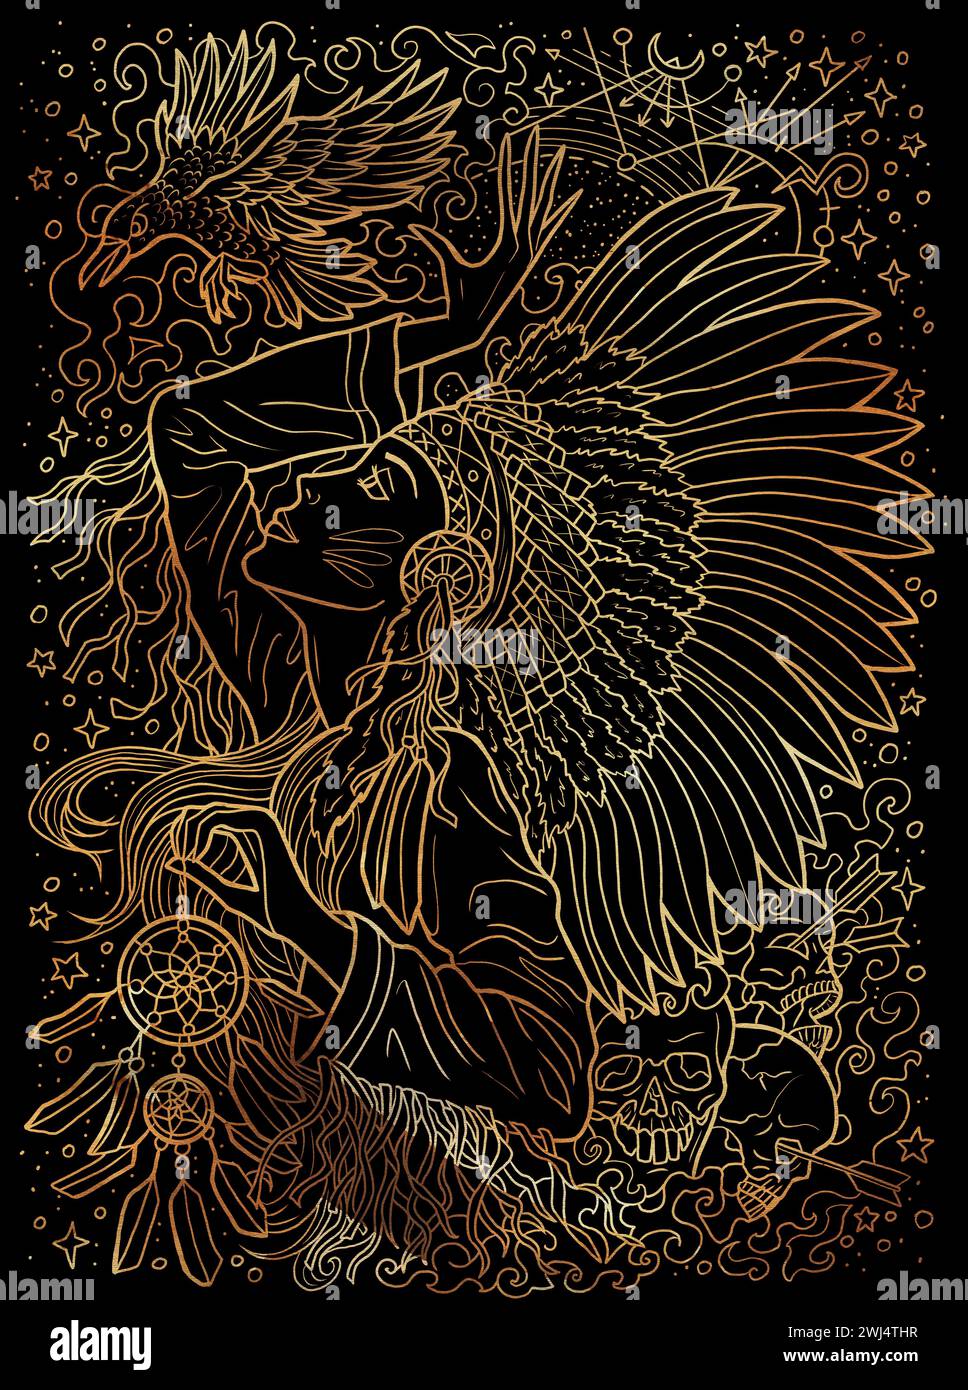 Illustration mit Fantasy-Gravur mit wunderschöner indianischer Frau als Hexe oder Zauberer auf schwarzem strukturiertem Hintergrund. Handgezeichnete farbenfrohe Grafik Stockfoto